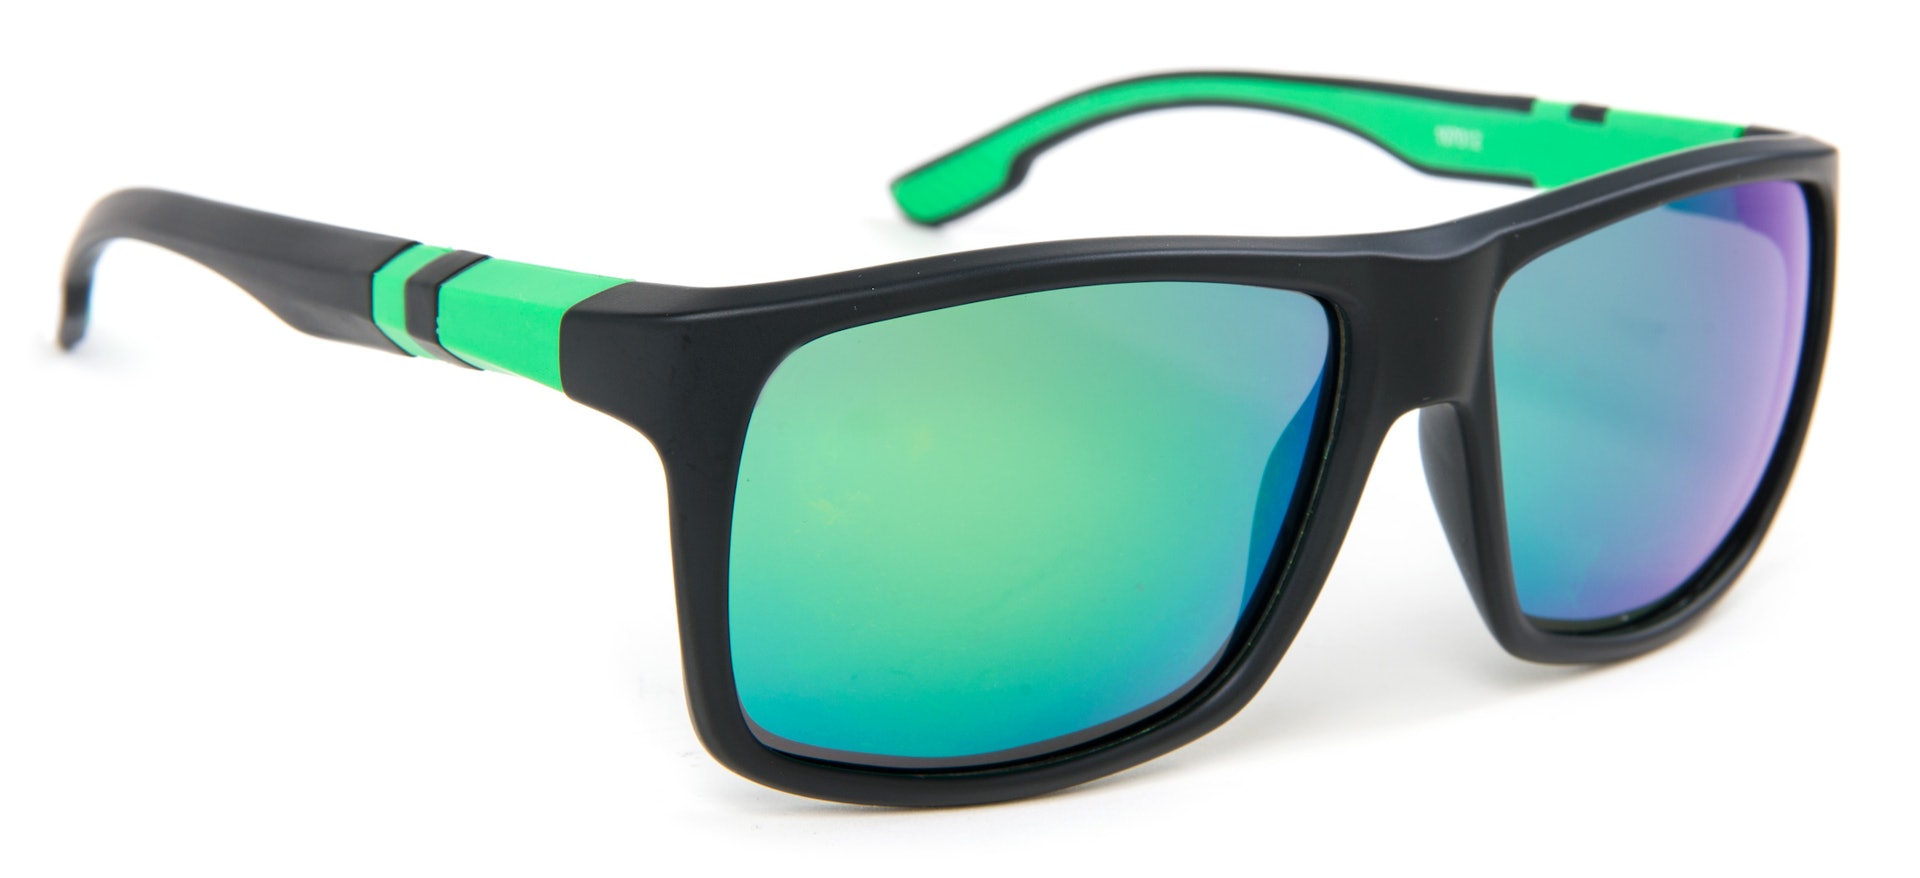 LPX Sunglasses - Grey Lens (slide 1 of 2)